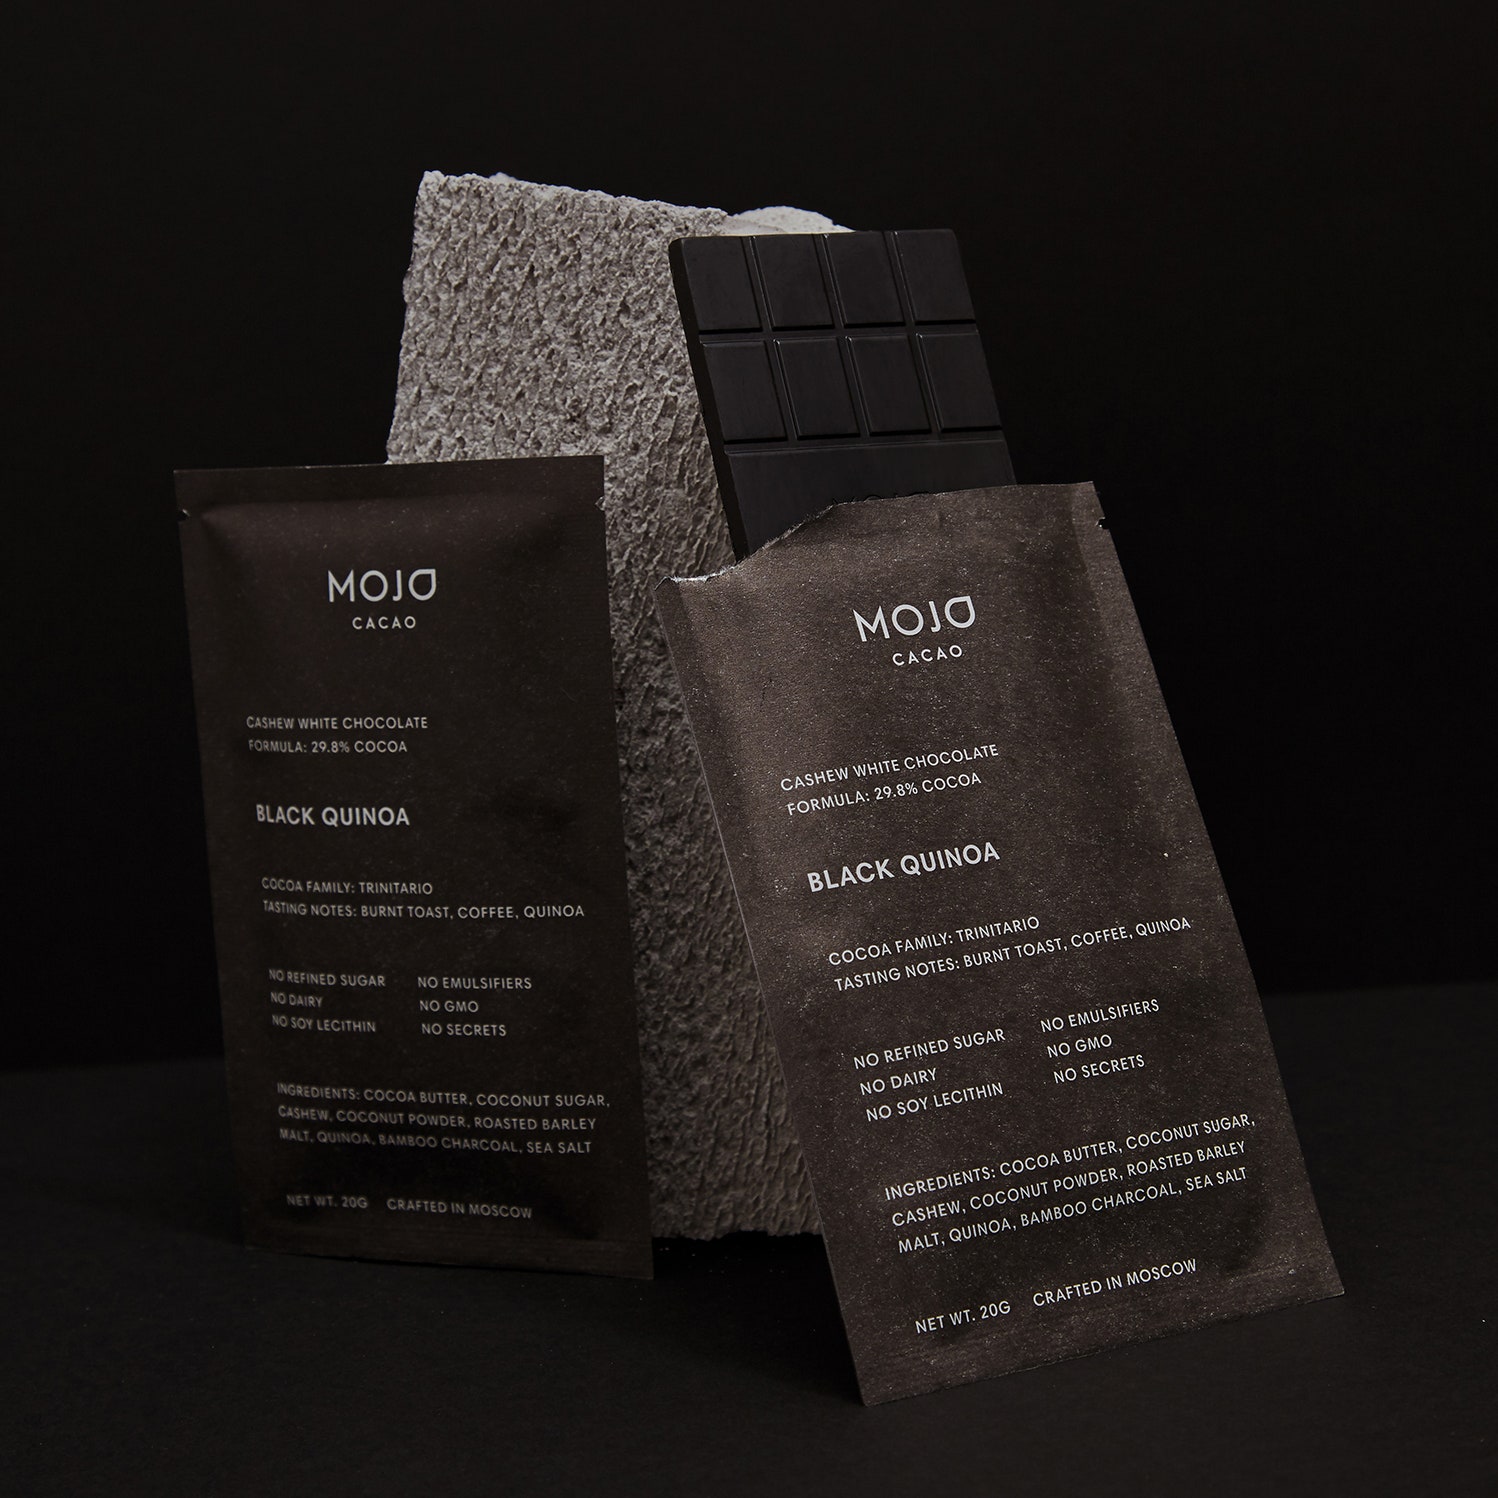 Mojo Cacao запустили угольно-черный шоколад &- всего на одну неделю